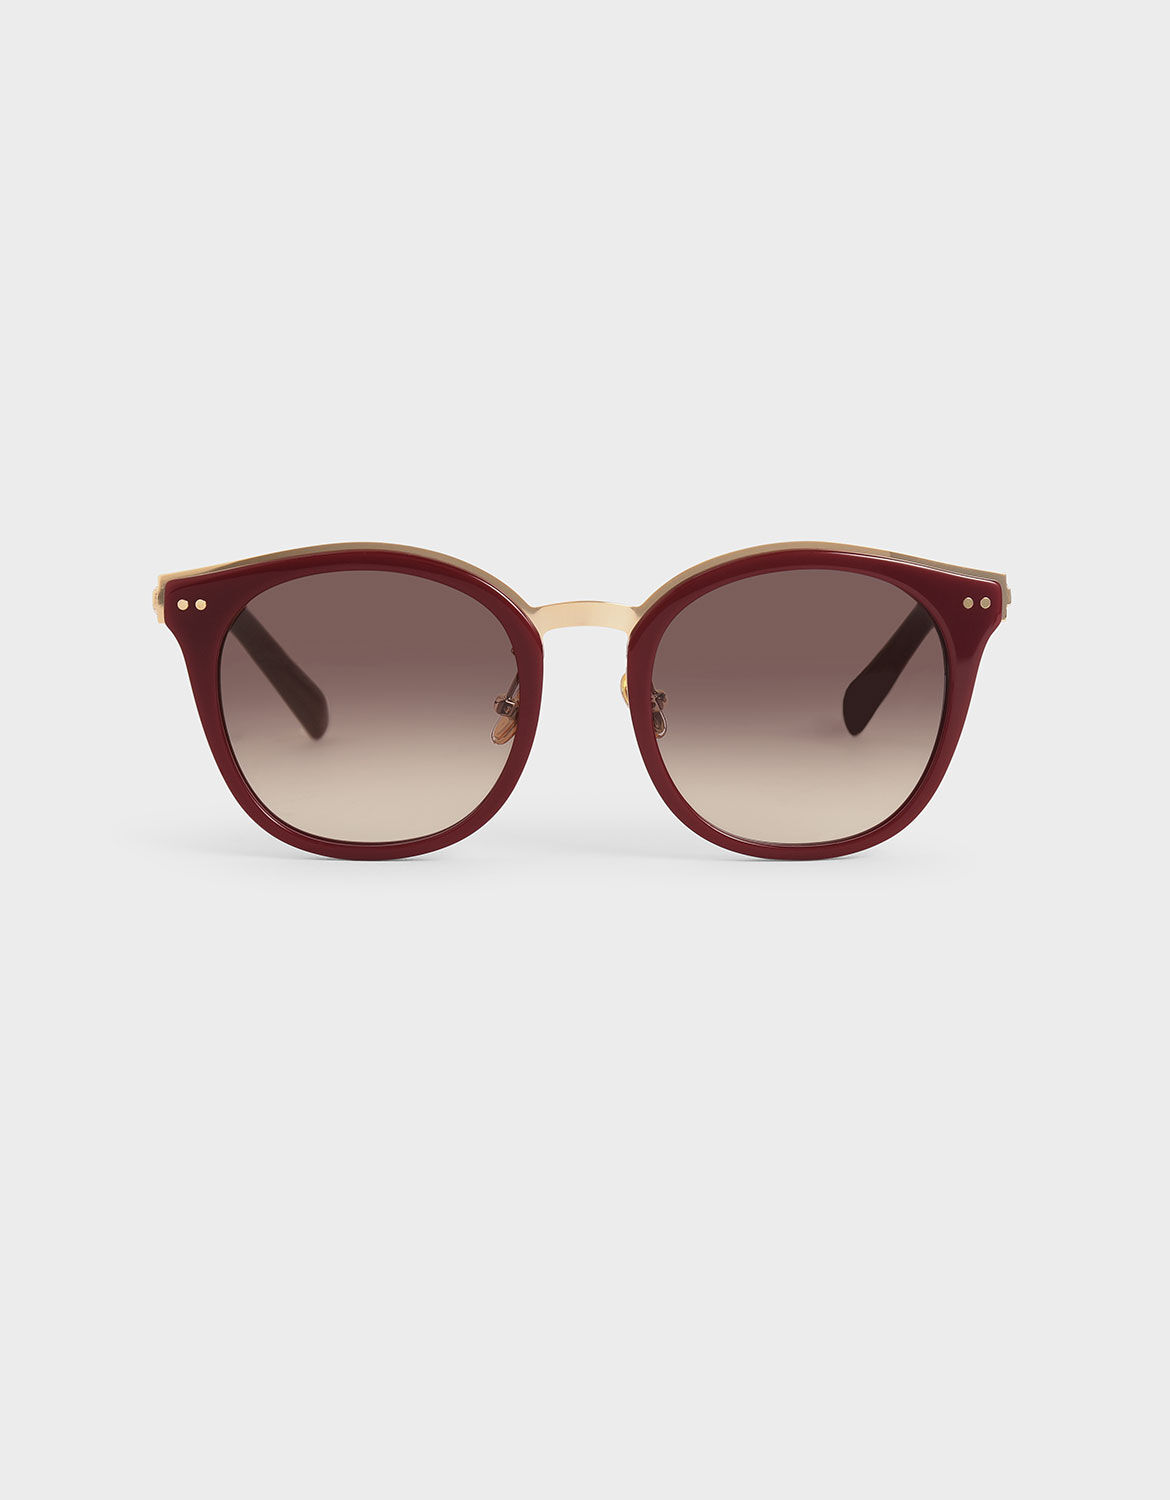 wayfarers sunglasses